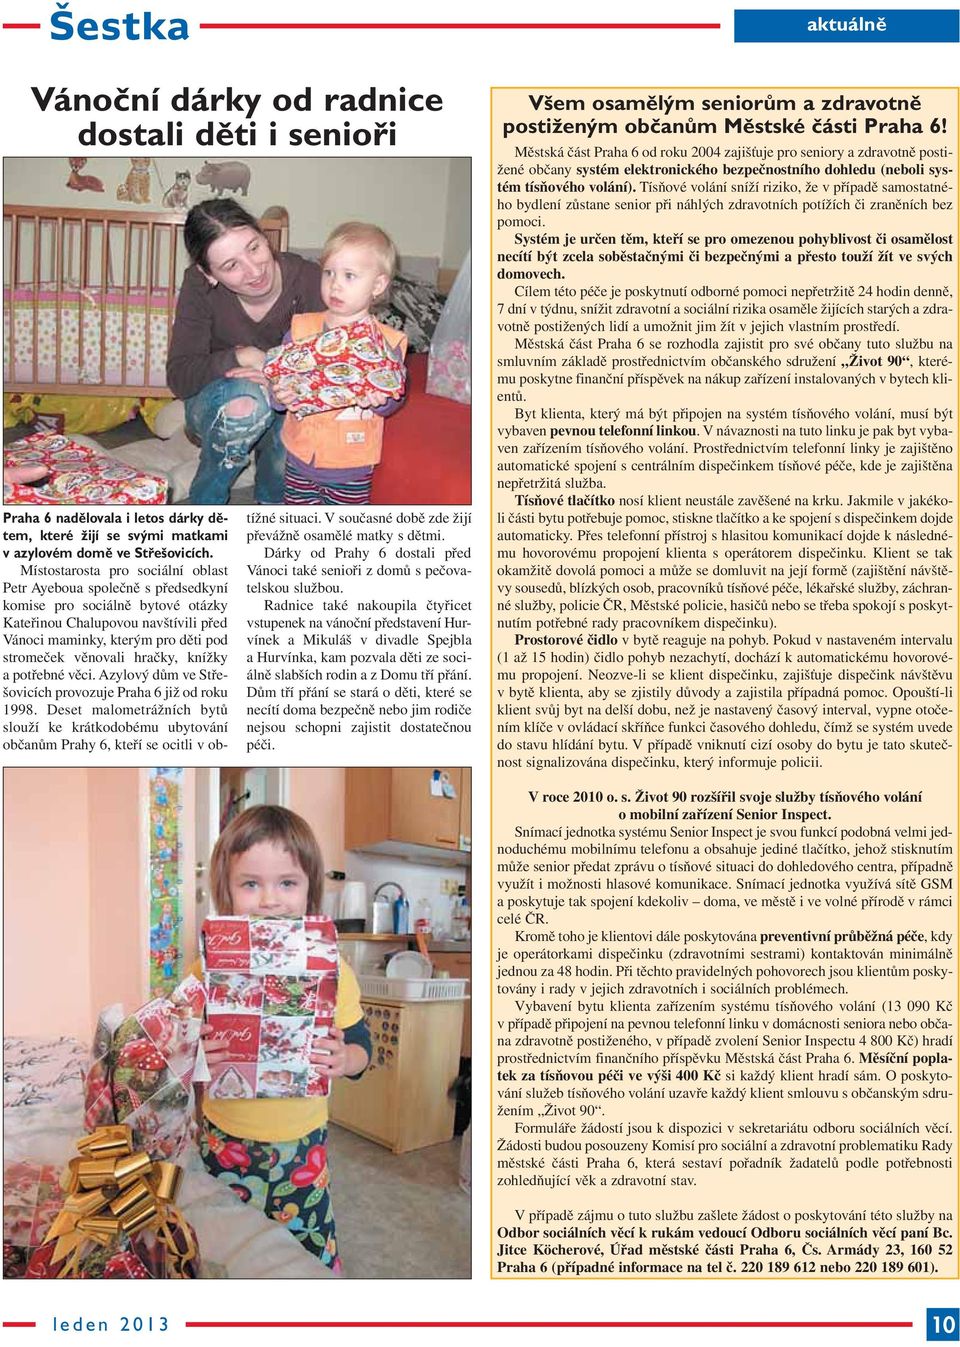 hračky, knížky a potřebné věci. Azylový dům ve Střešovicích provozuje Praha 6 již od roku 1998.